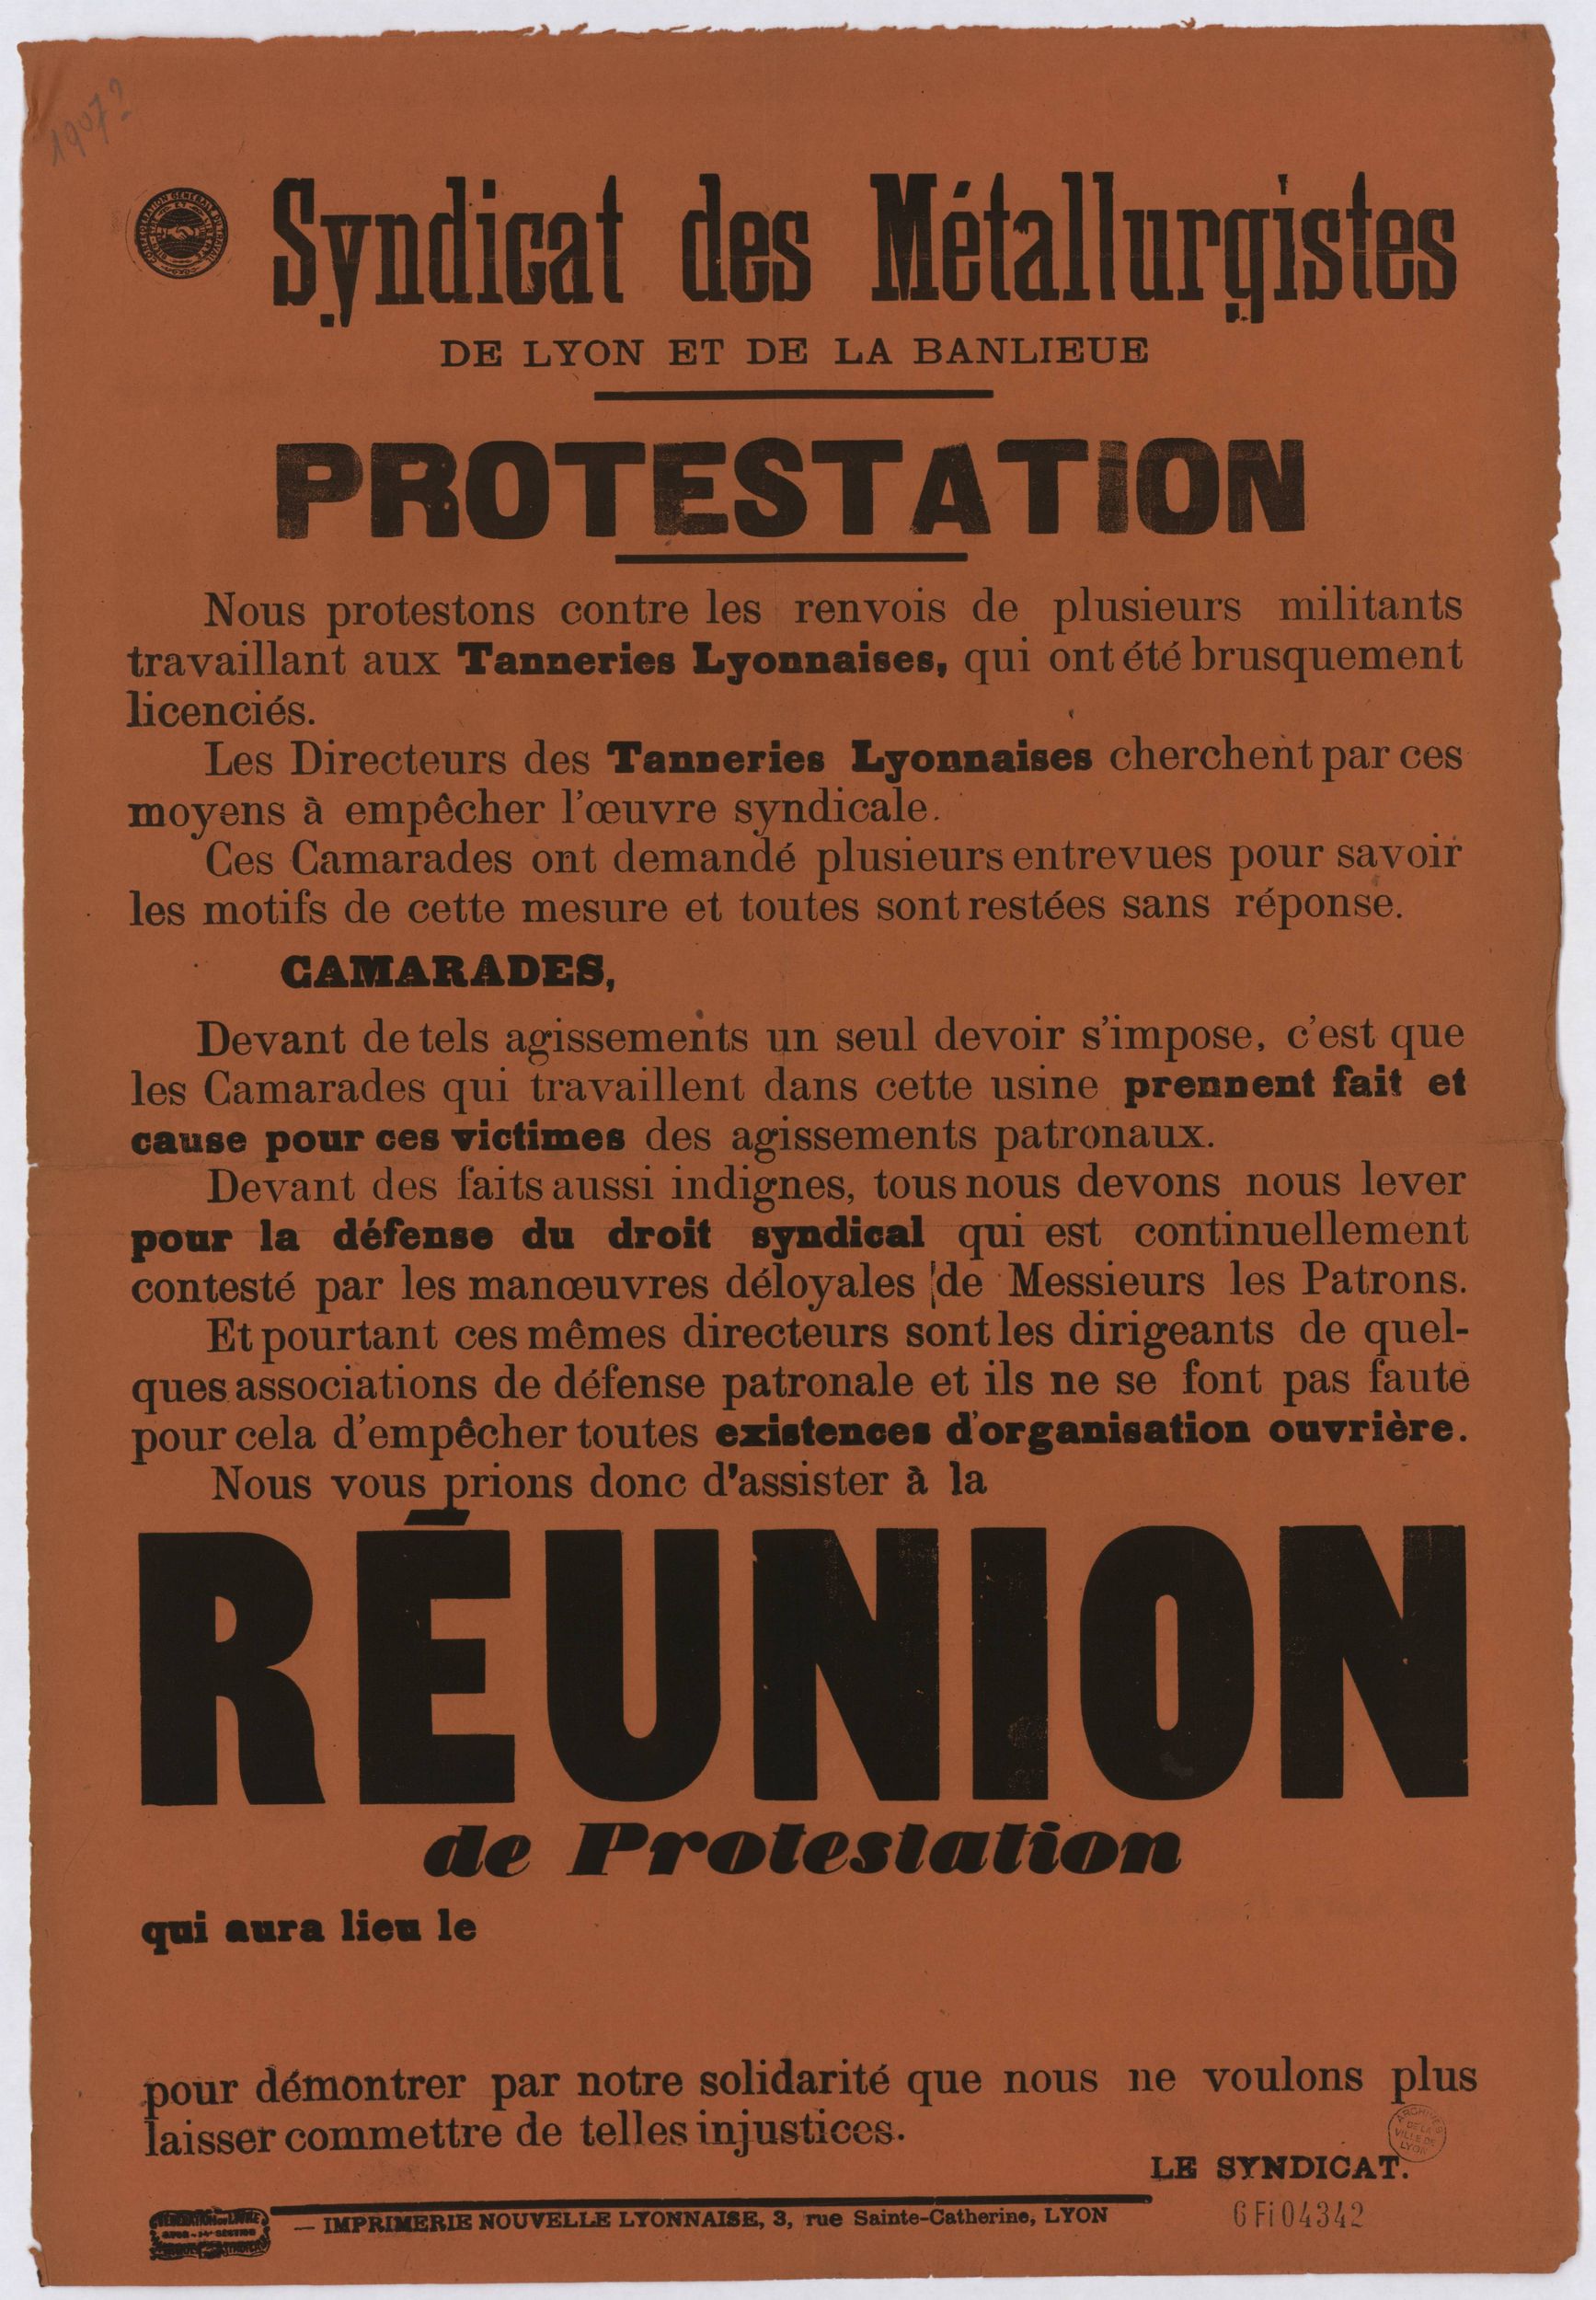 Syndicat des métallurgistes de Lyon et de la banlieue - Réunion de protestation : affiche syndicale (1907, cote : 6FI/4342)